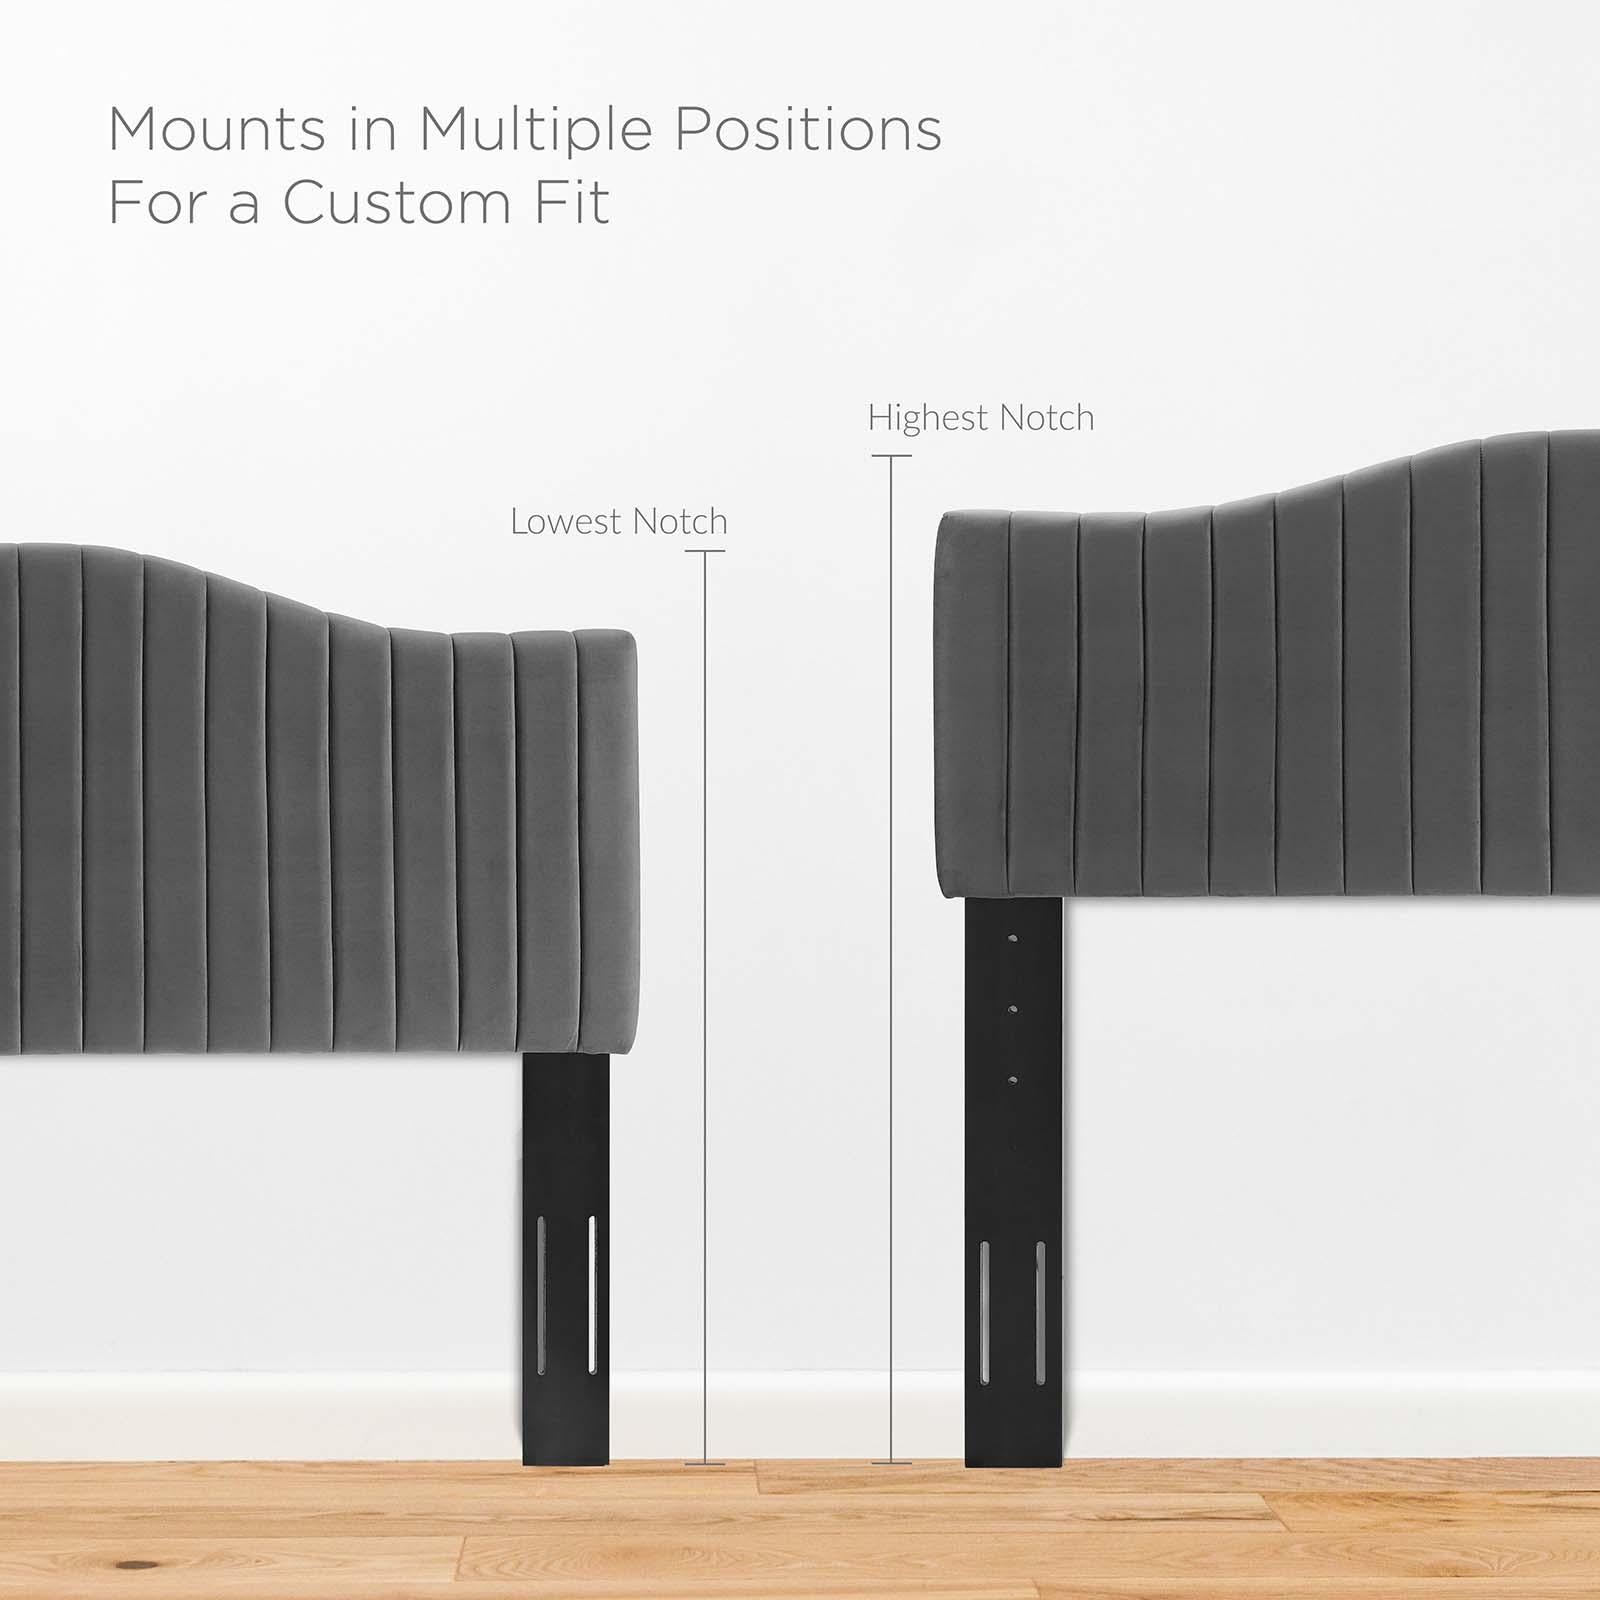 Modway Furniture Modern Juniper Channel Tufted Performance Velvet Full Platform Bed - MOD-6747